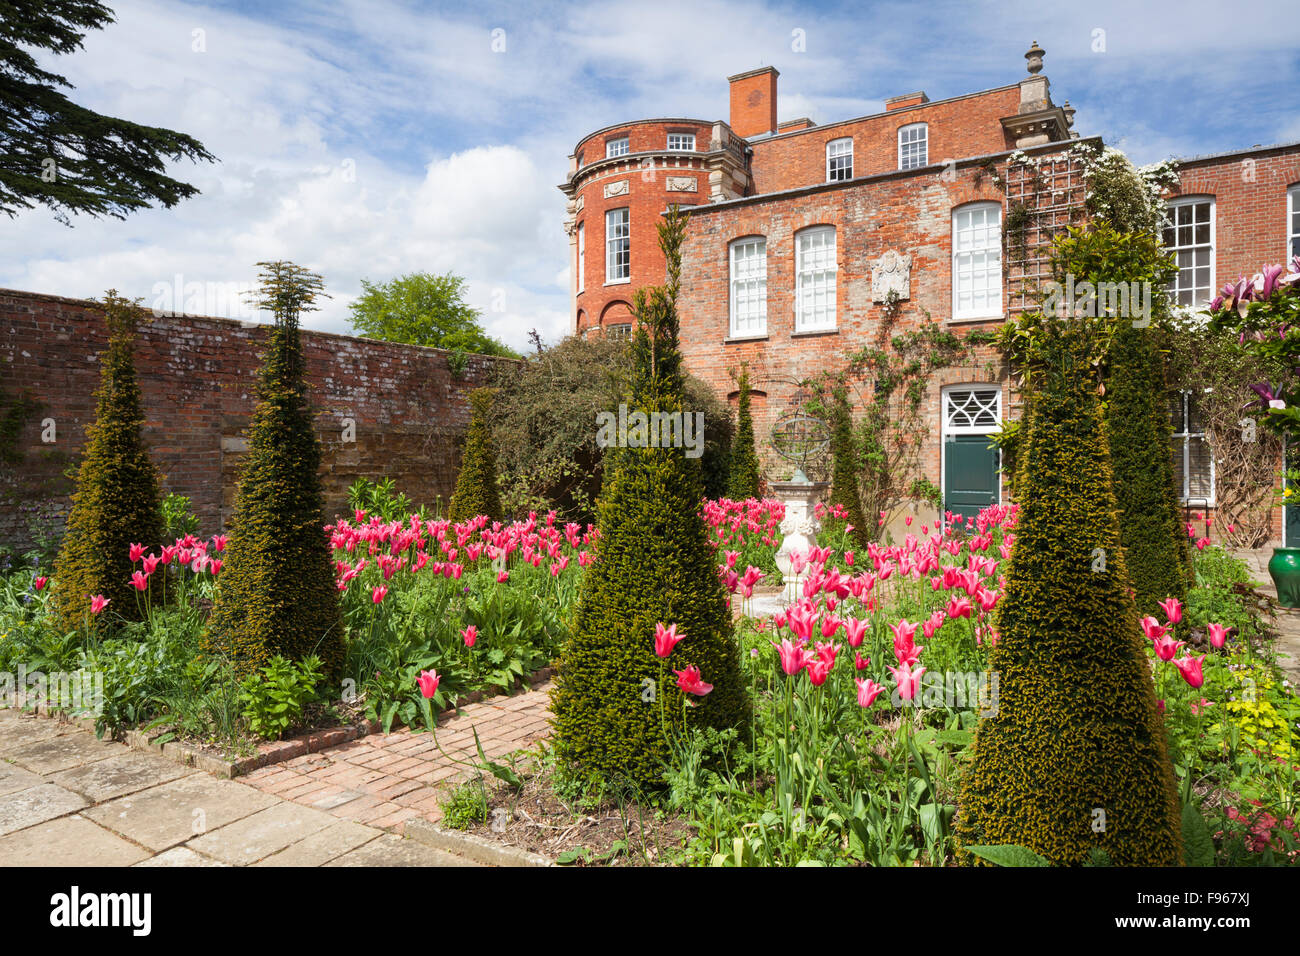 Le jardin hollandais avec des flèches et des topiaires Chine tulipe Rose est un design contemporain par Angela Collins, Cottesbrooke Hall, le Northamptonshire, Angleterre Banque D'Images